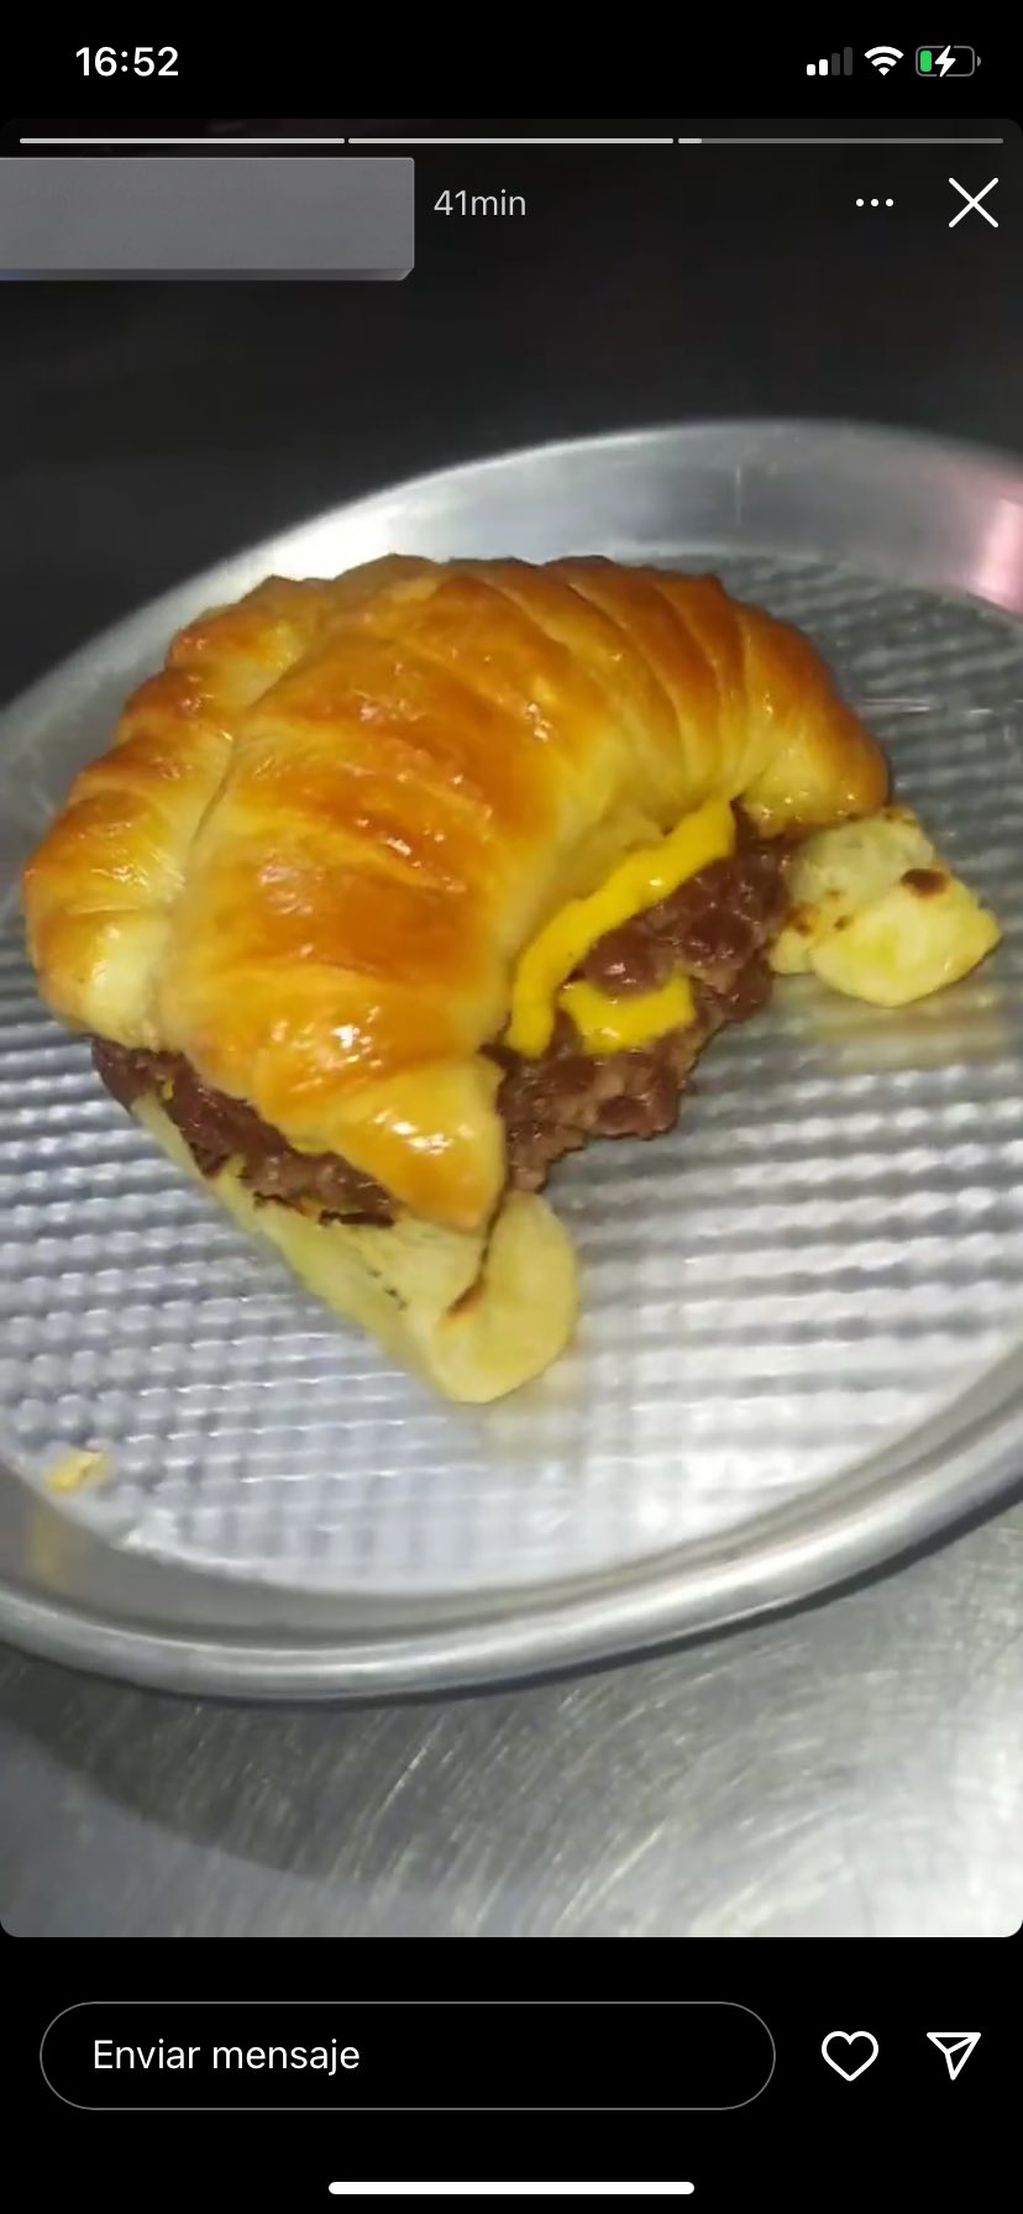 Nueva tendencia viral en redes: las hamburguesas con medialunas y cheddar